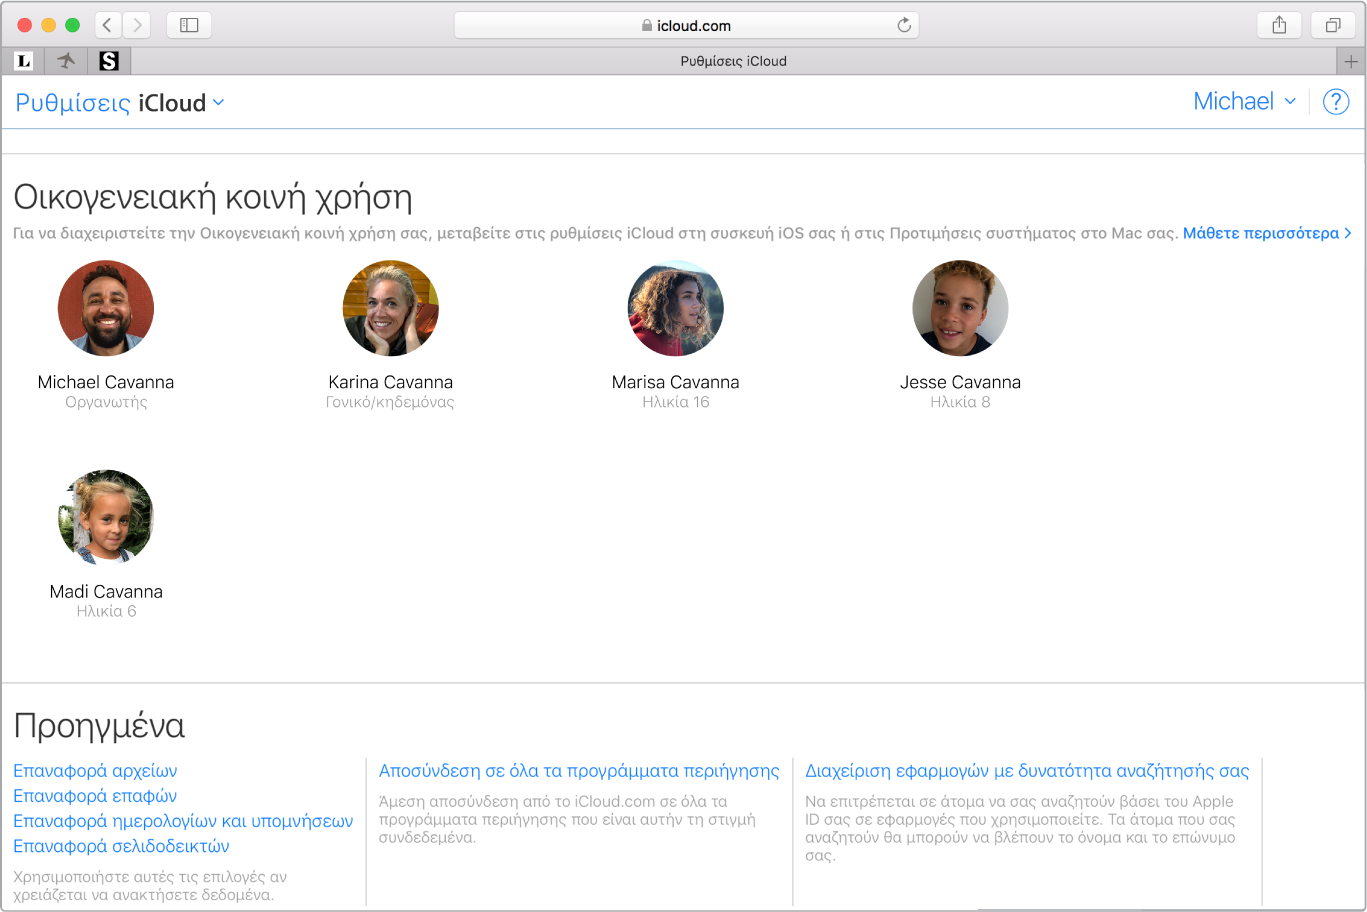 Παράθυρο του Safari που δείχνει ρυθμίσεις Οικογενειακής κοινής χρήσης στο iCloud.com.